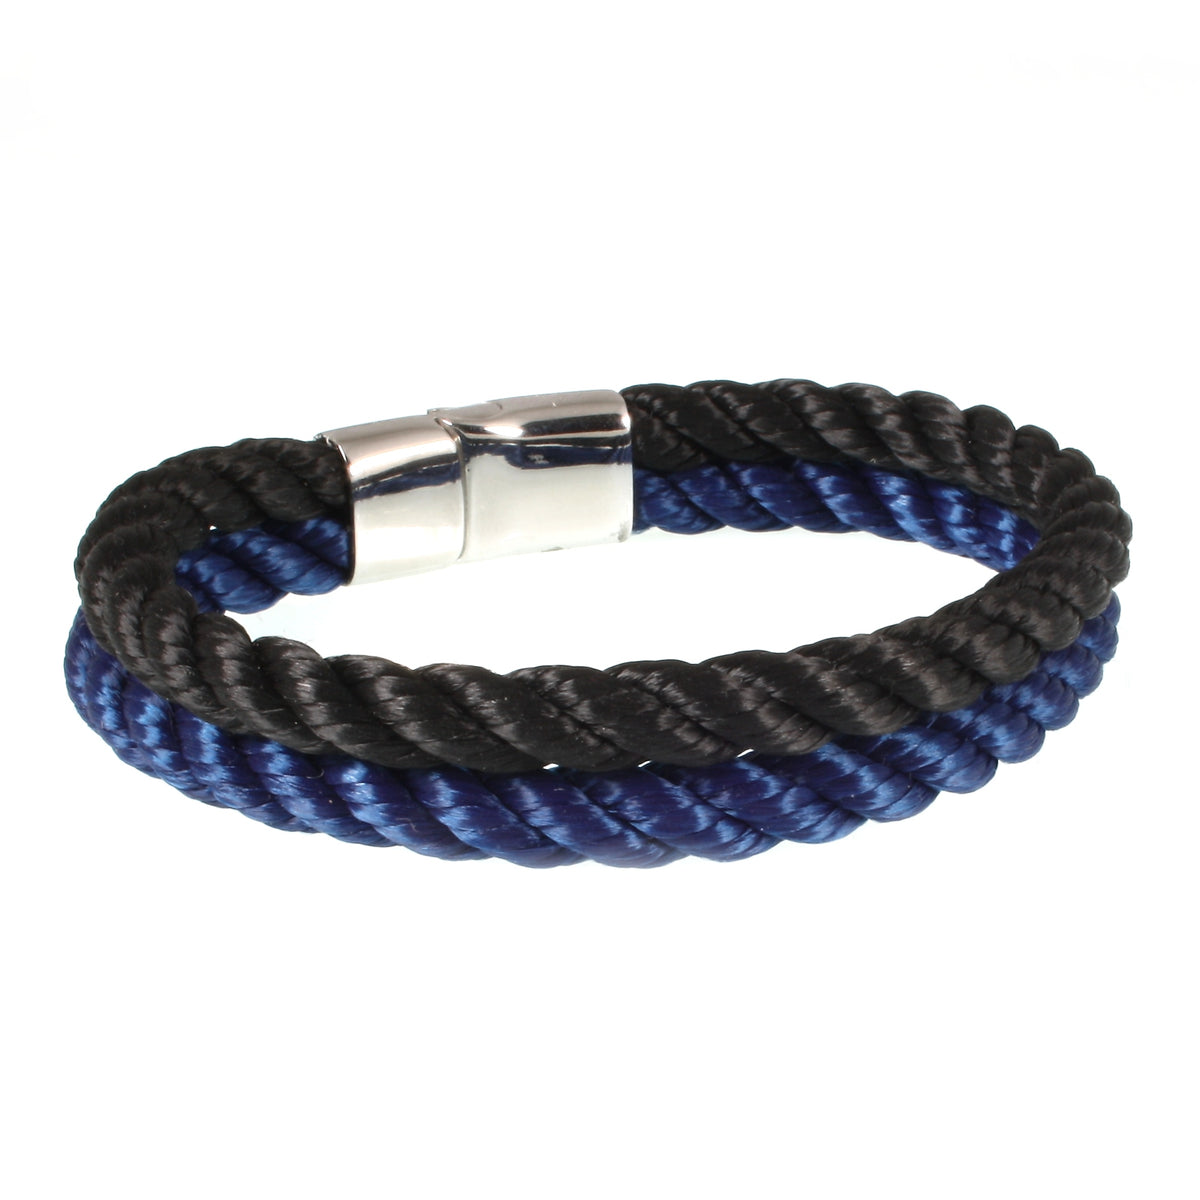 Herren-Segeltau-Armband-Tarifa-schwarz-koenigsblau-geflochten-Kordel-Edelstahlverschluss-hinten-wavepirate-shop-k